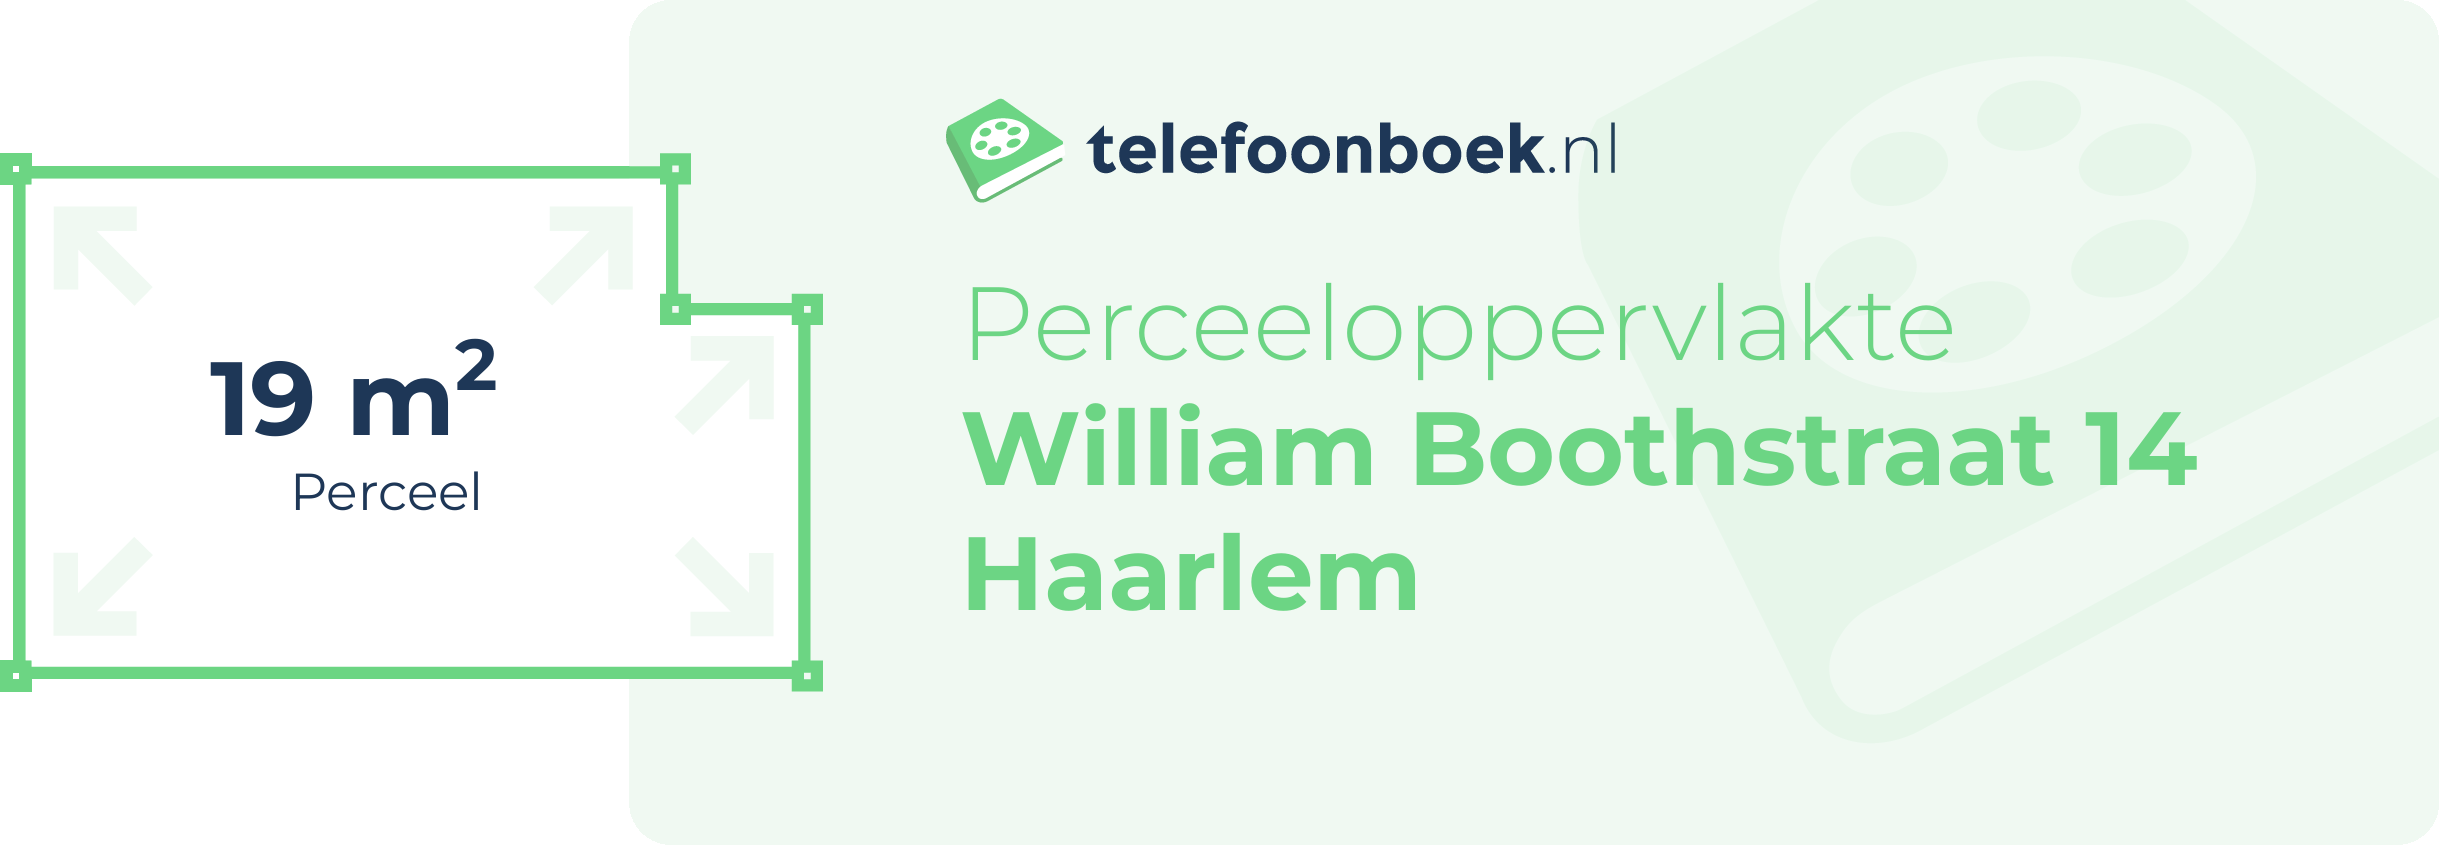 Perceeloppervlakte William Boothstraat 14 Haarlem